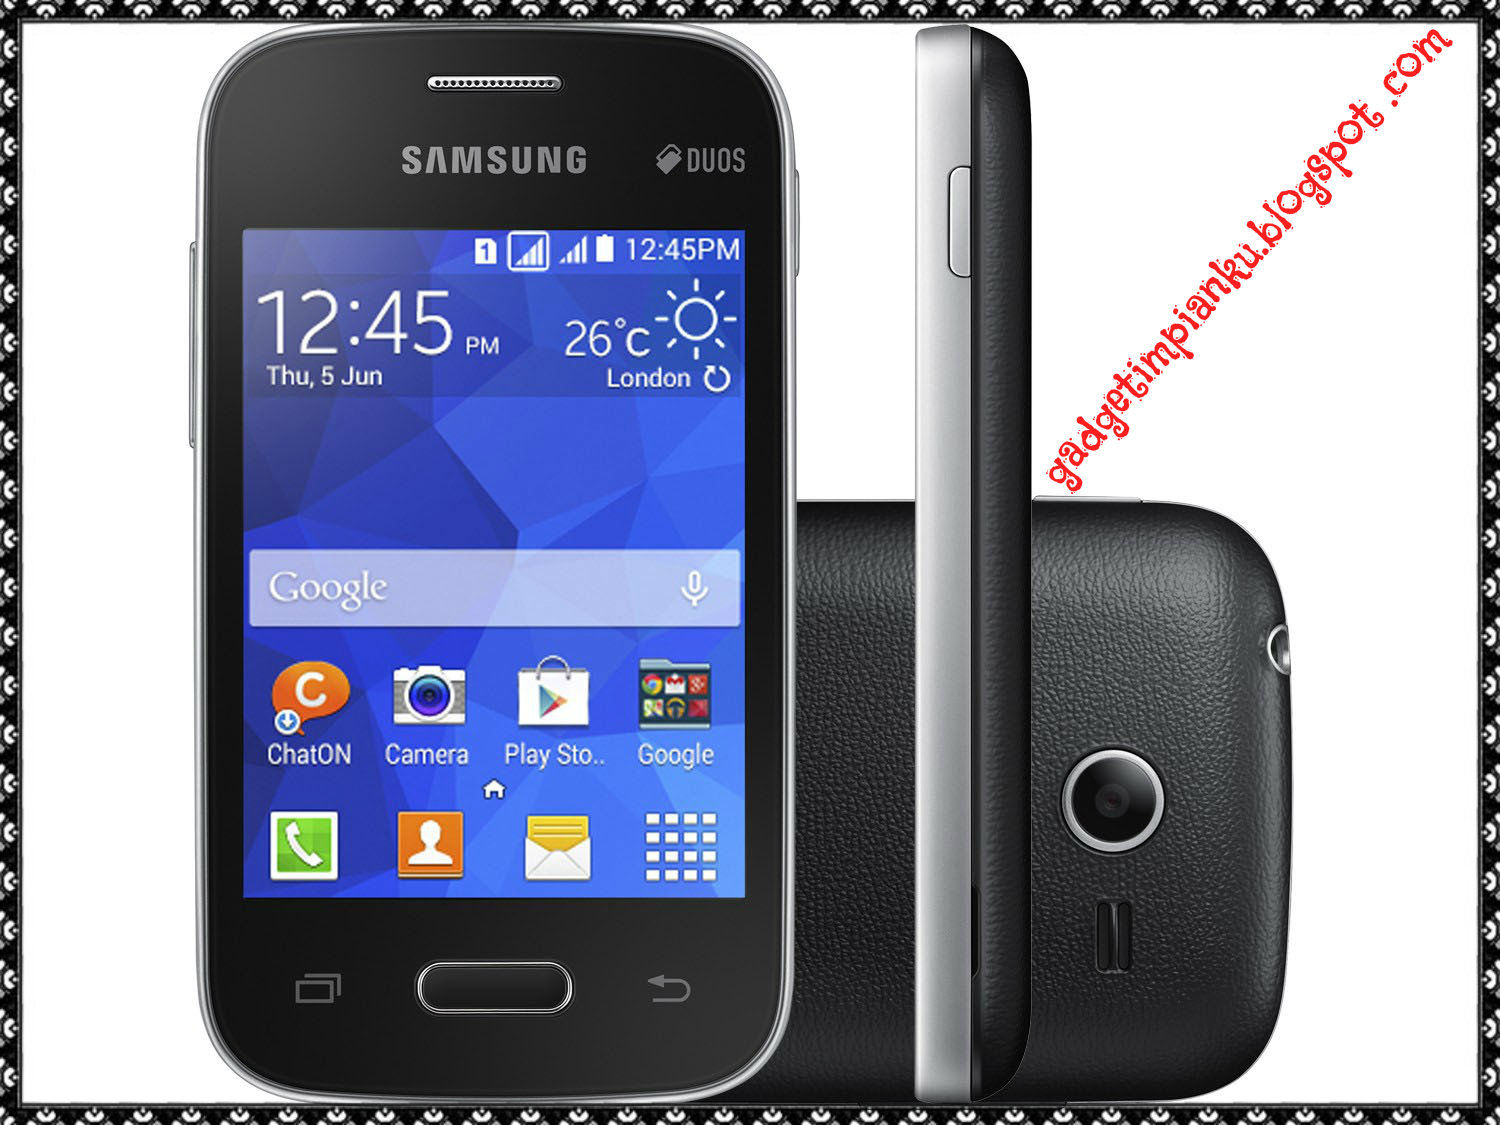 JUARA Daftar Harga Dan Tipe Hp Samsung Pocket 2 WAW